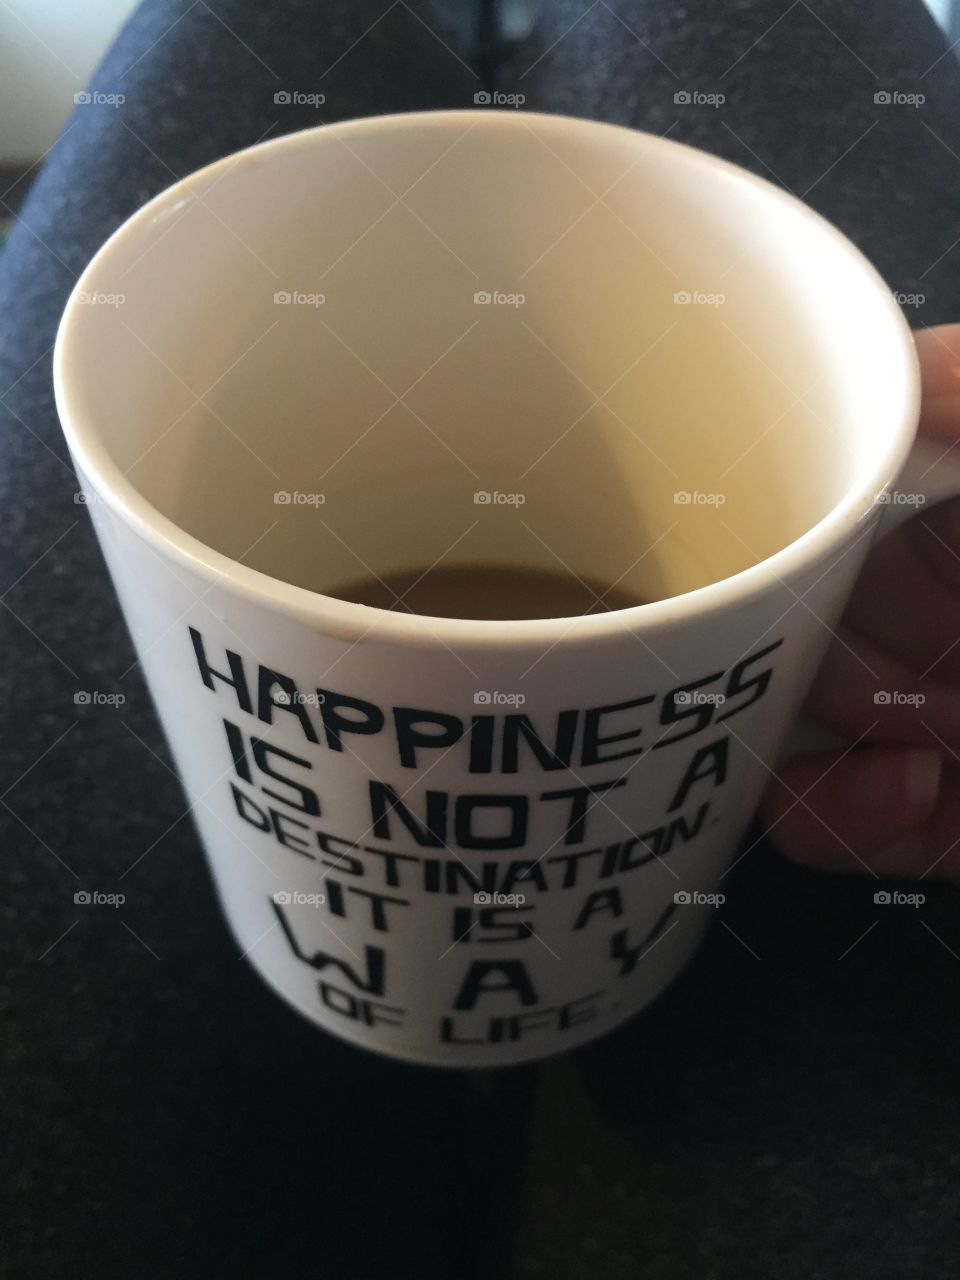 Coffee makes me happy